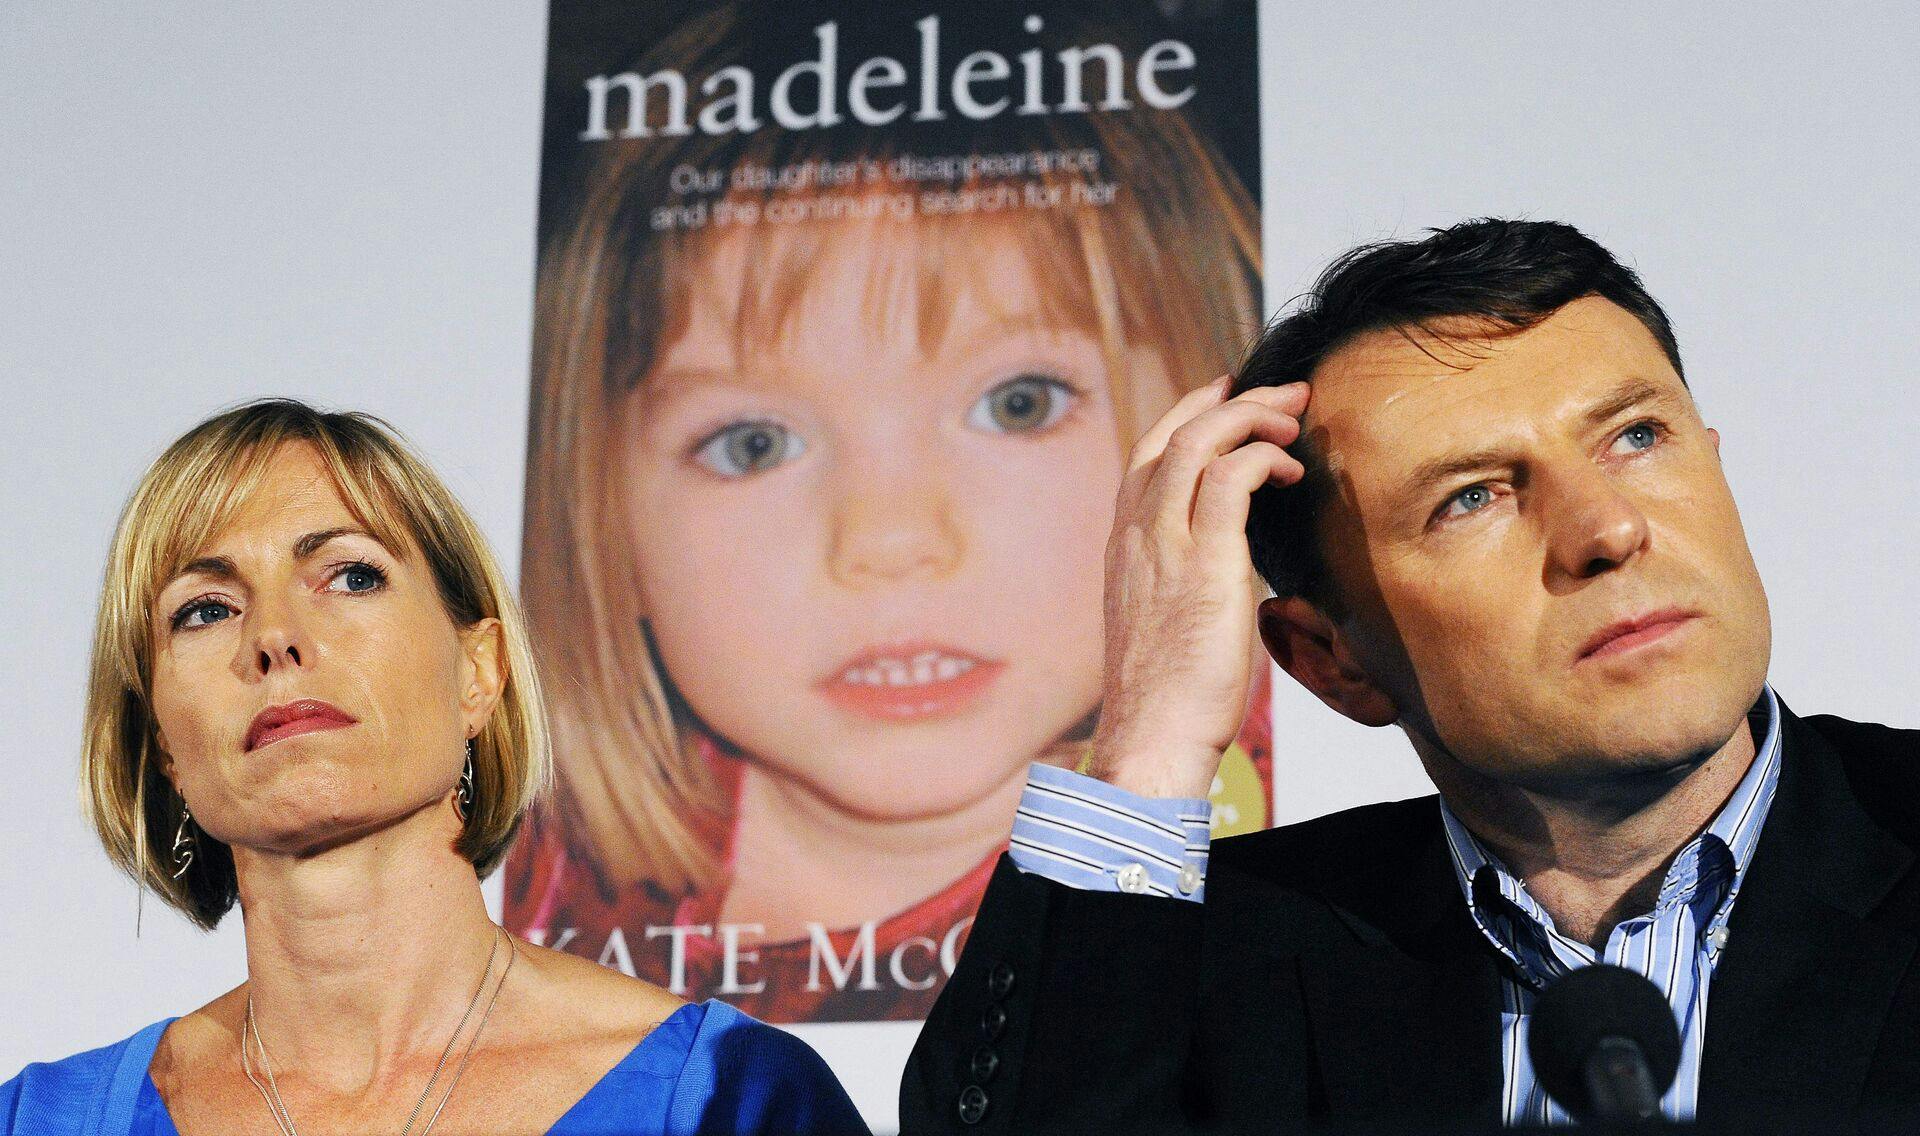 Forældrene til Madeleine McCann har undervejs i efterforskningen også været under mistanke for at have haft noget at gøre med deres datters forsvinden. De er siden blevet frikendt for mistanke.